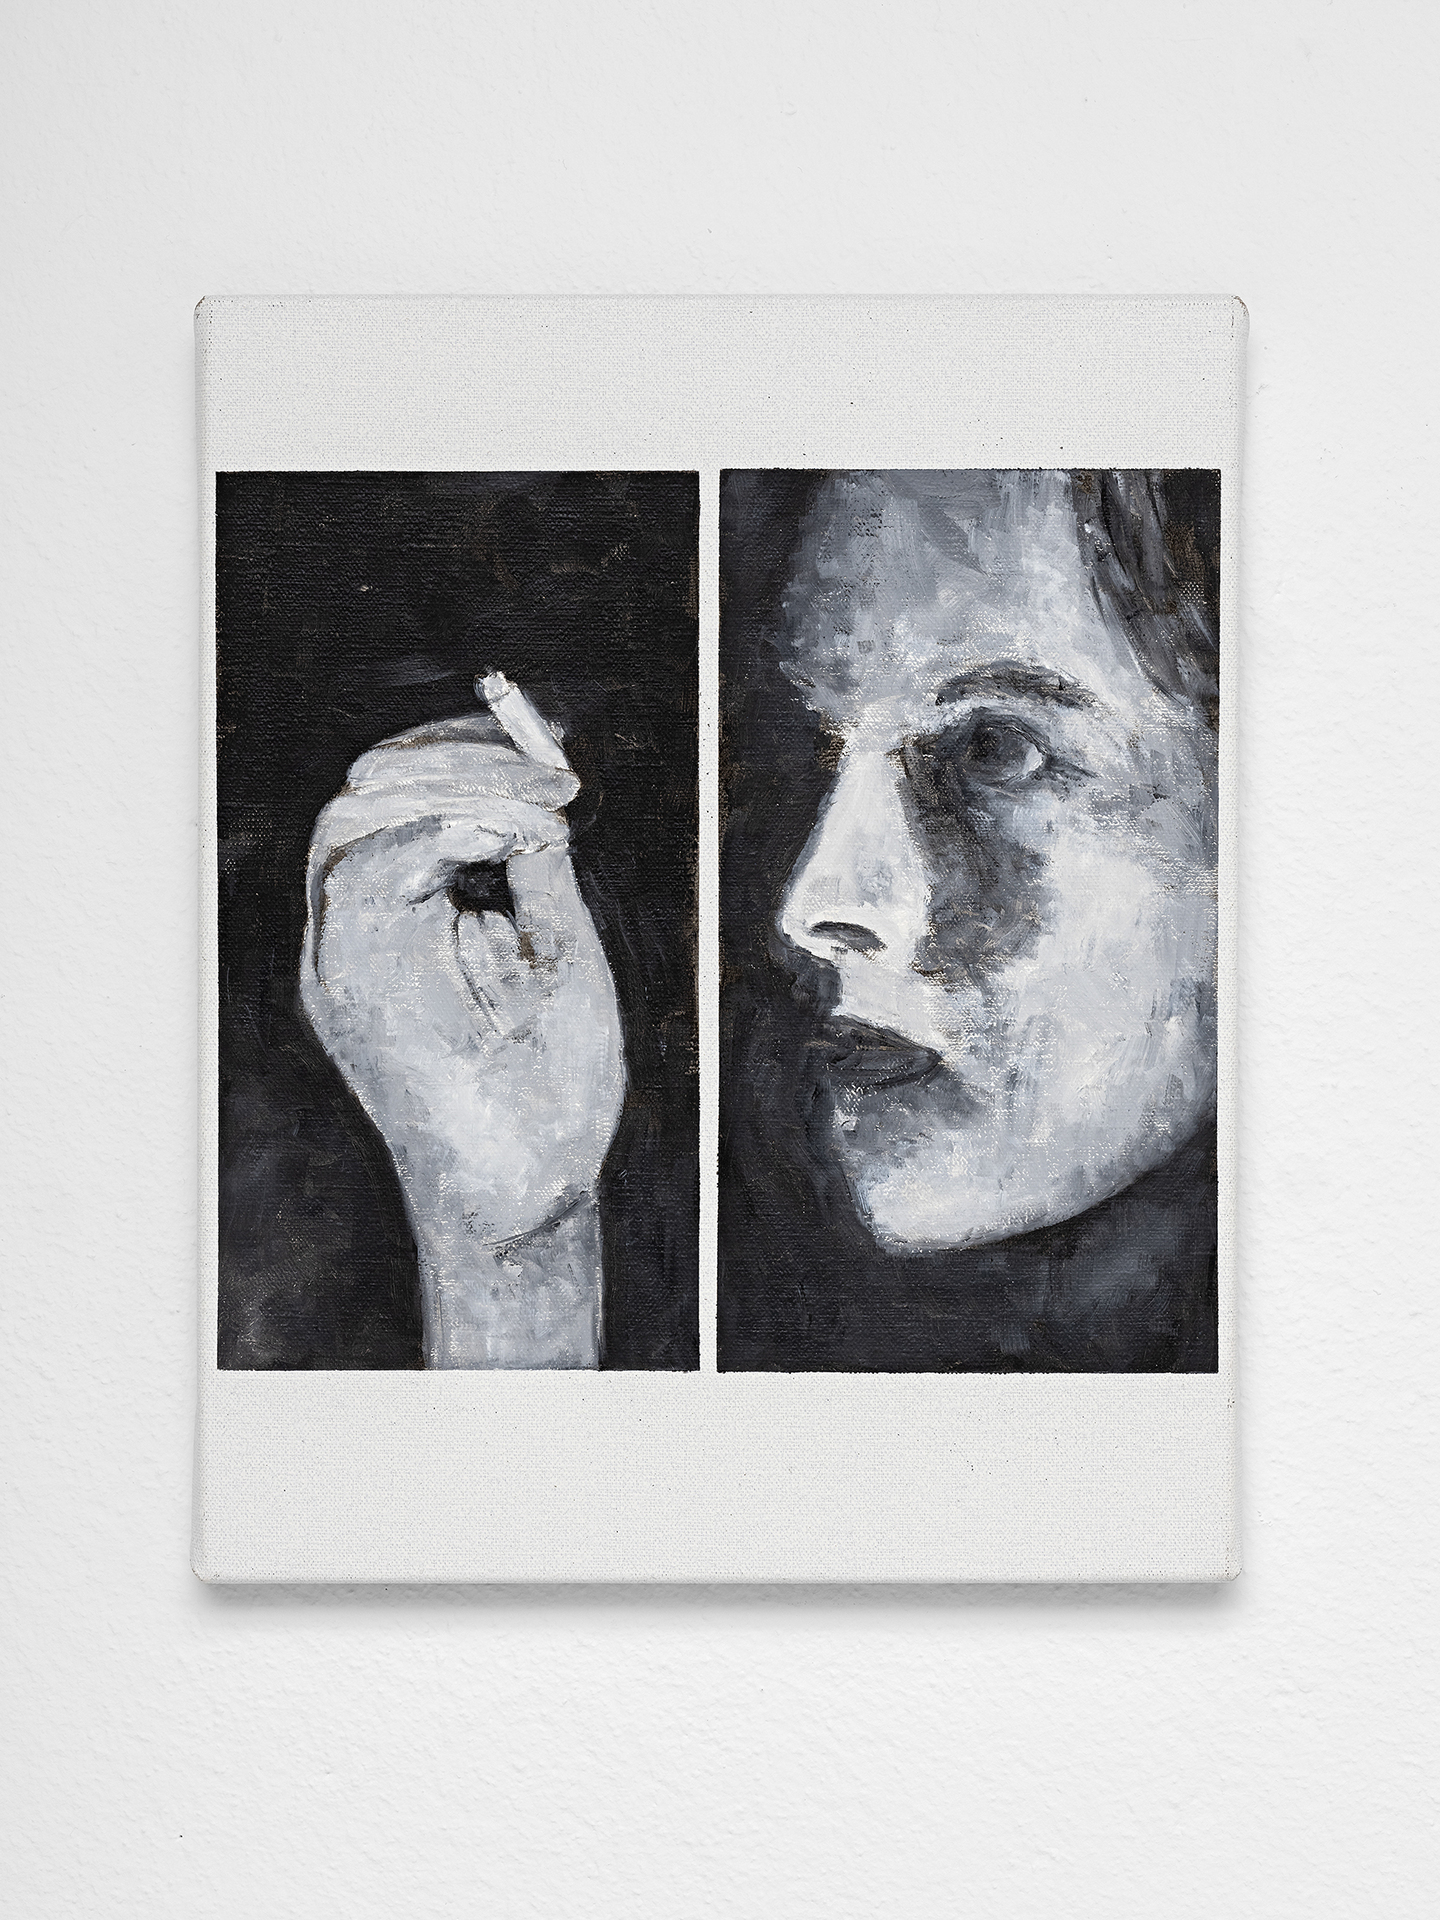 "Subversive", 2021, oil on linen canvas, 41 x 31 cm